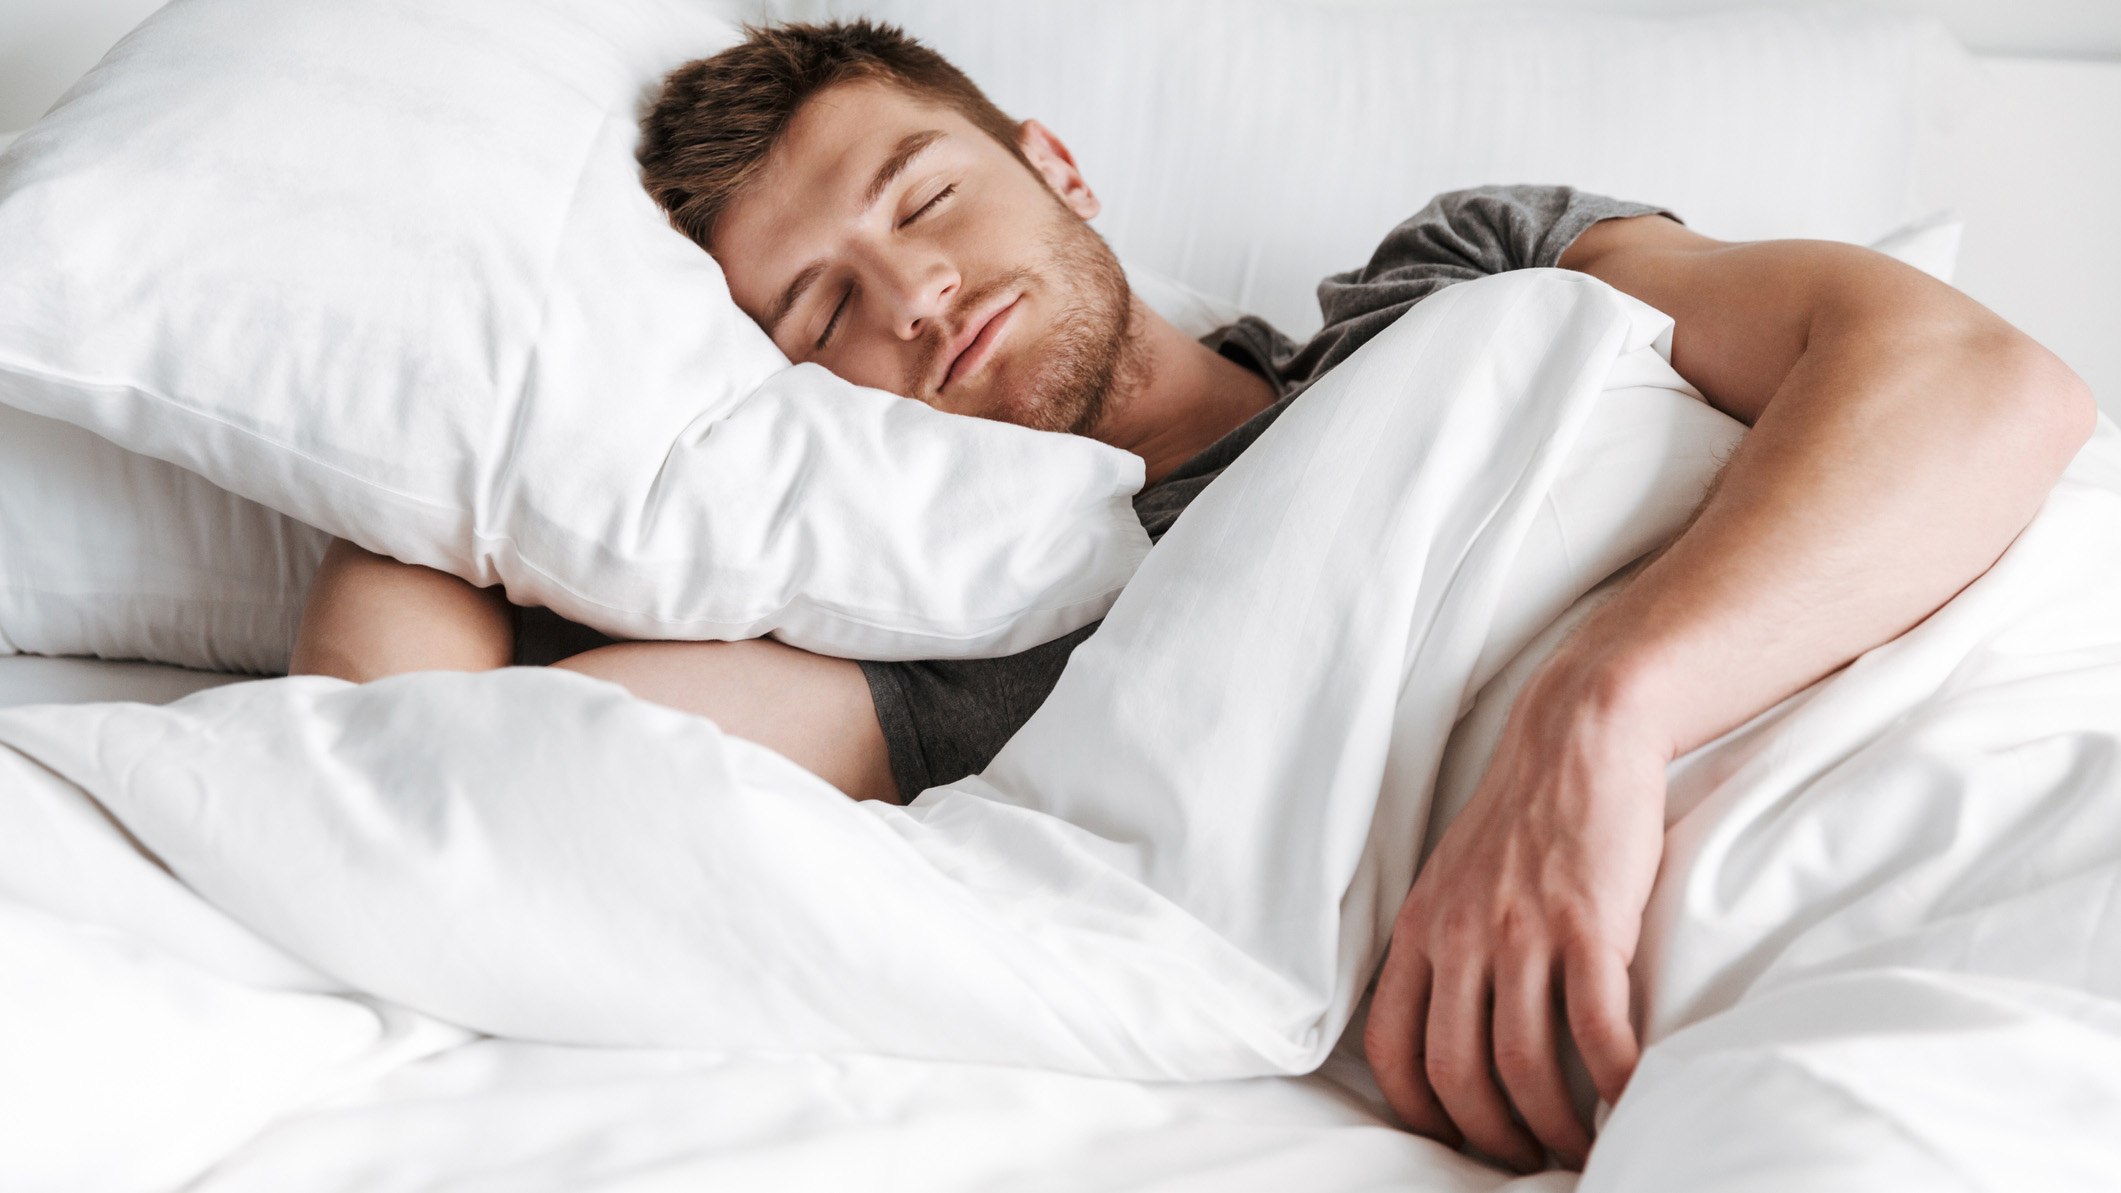 Мужчина с темными волосами спит на боку, накрытый белым одеялом.